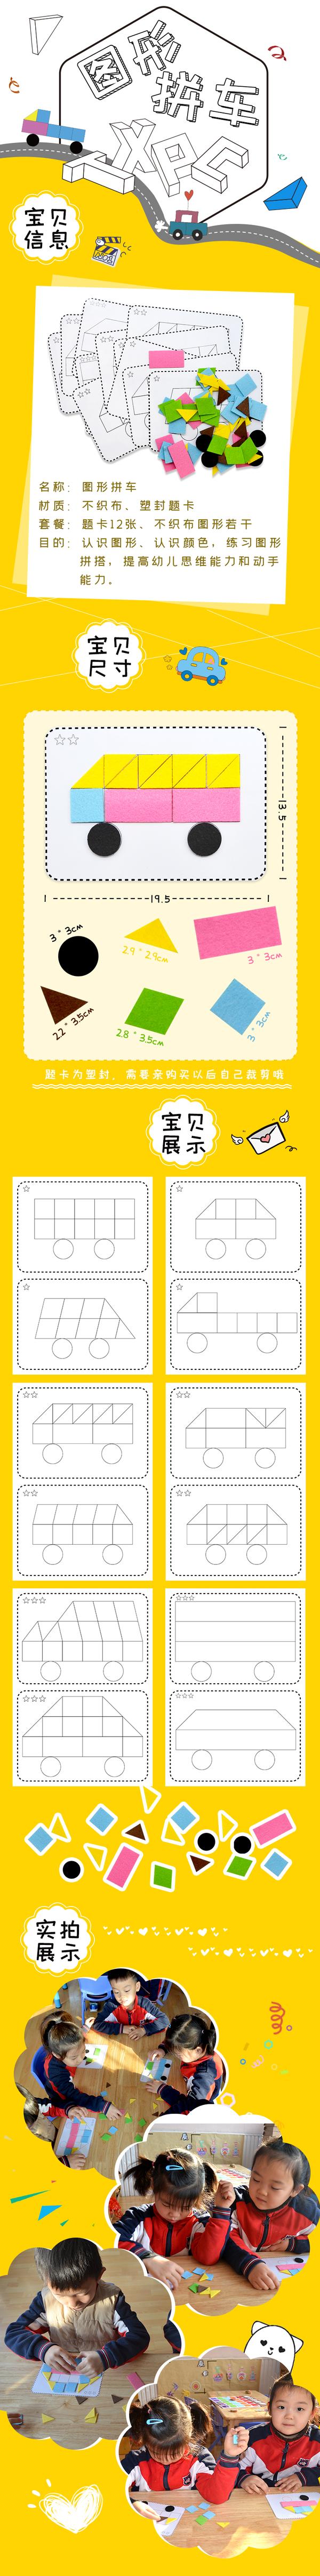 【布好玩_小班益智区】原创幼儿园自制玩教具图形拼车